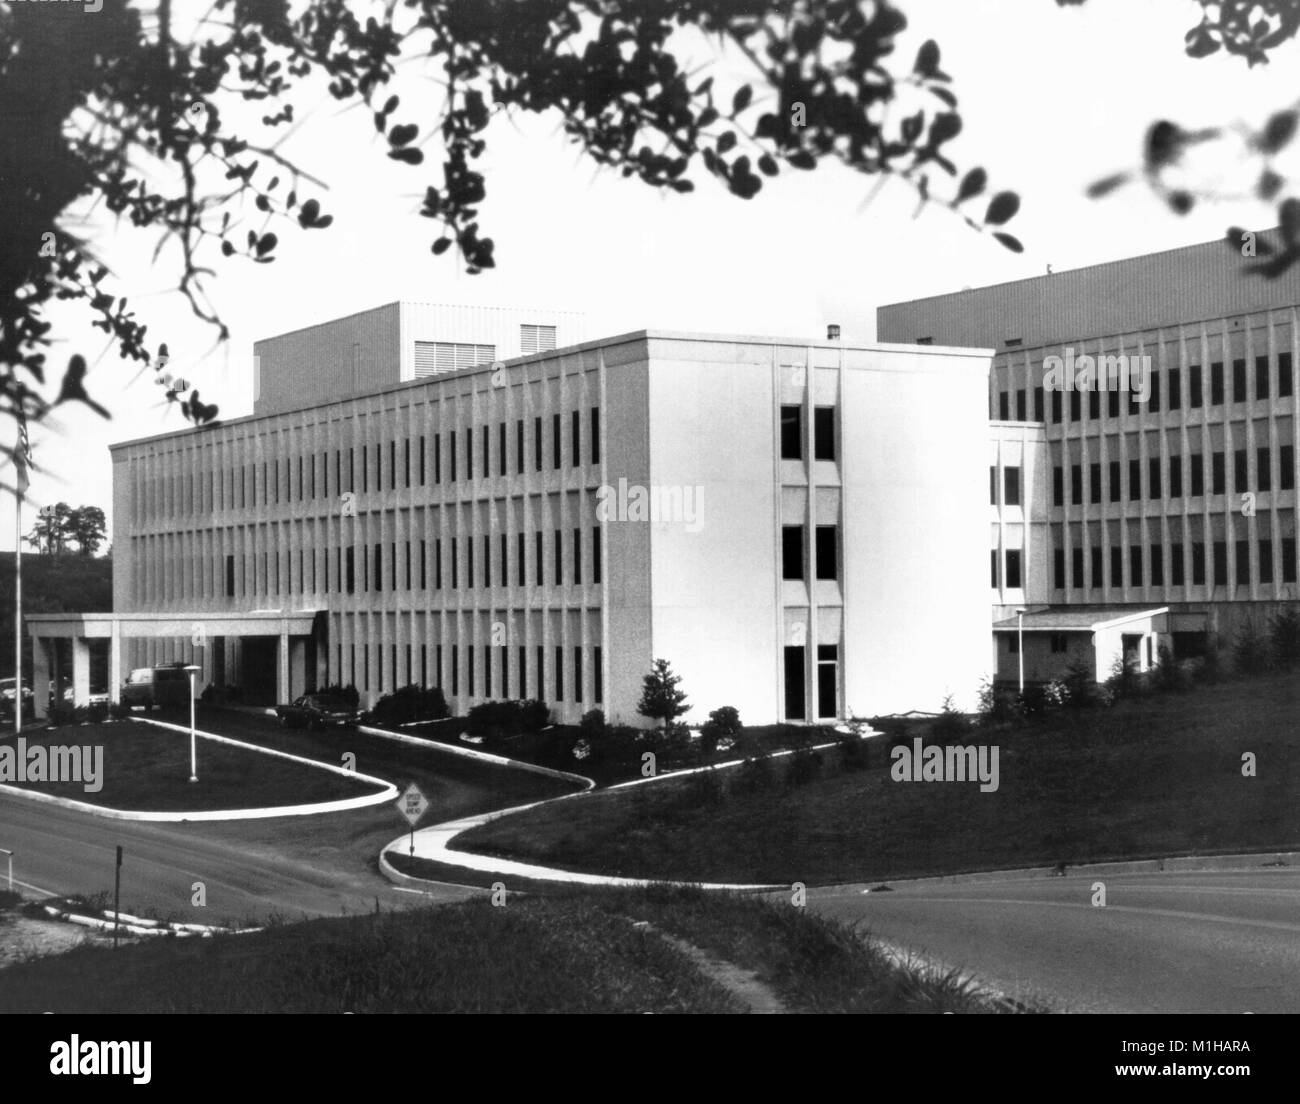 Photographie montrant une vue surélevée d'un bâtiment en plein heght, le National Institute for Occupational Safety and Health (NIOSH), de Morgantown, West Virginia, 1956. Image courtoisie CDC. () Banque D'Images